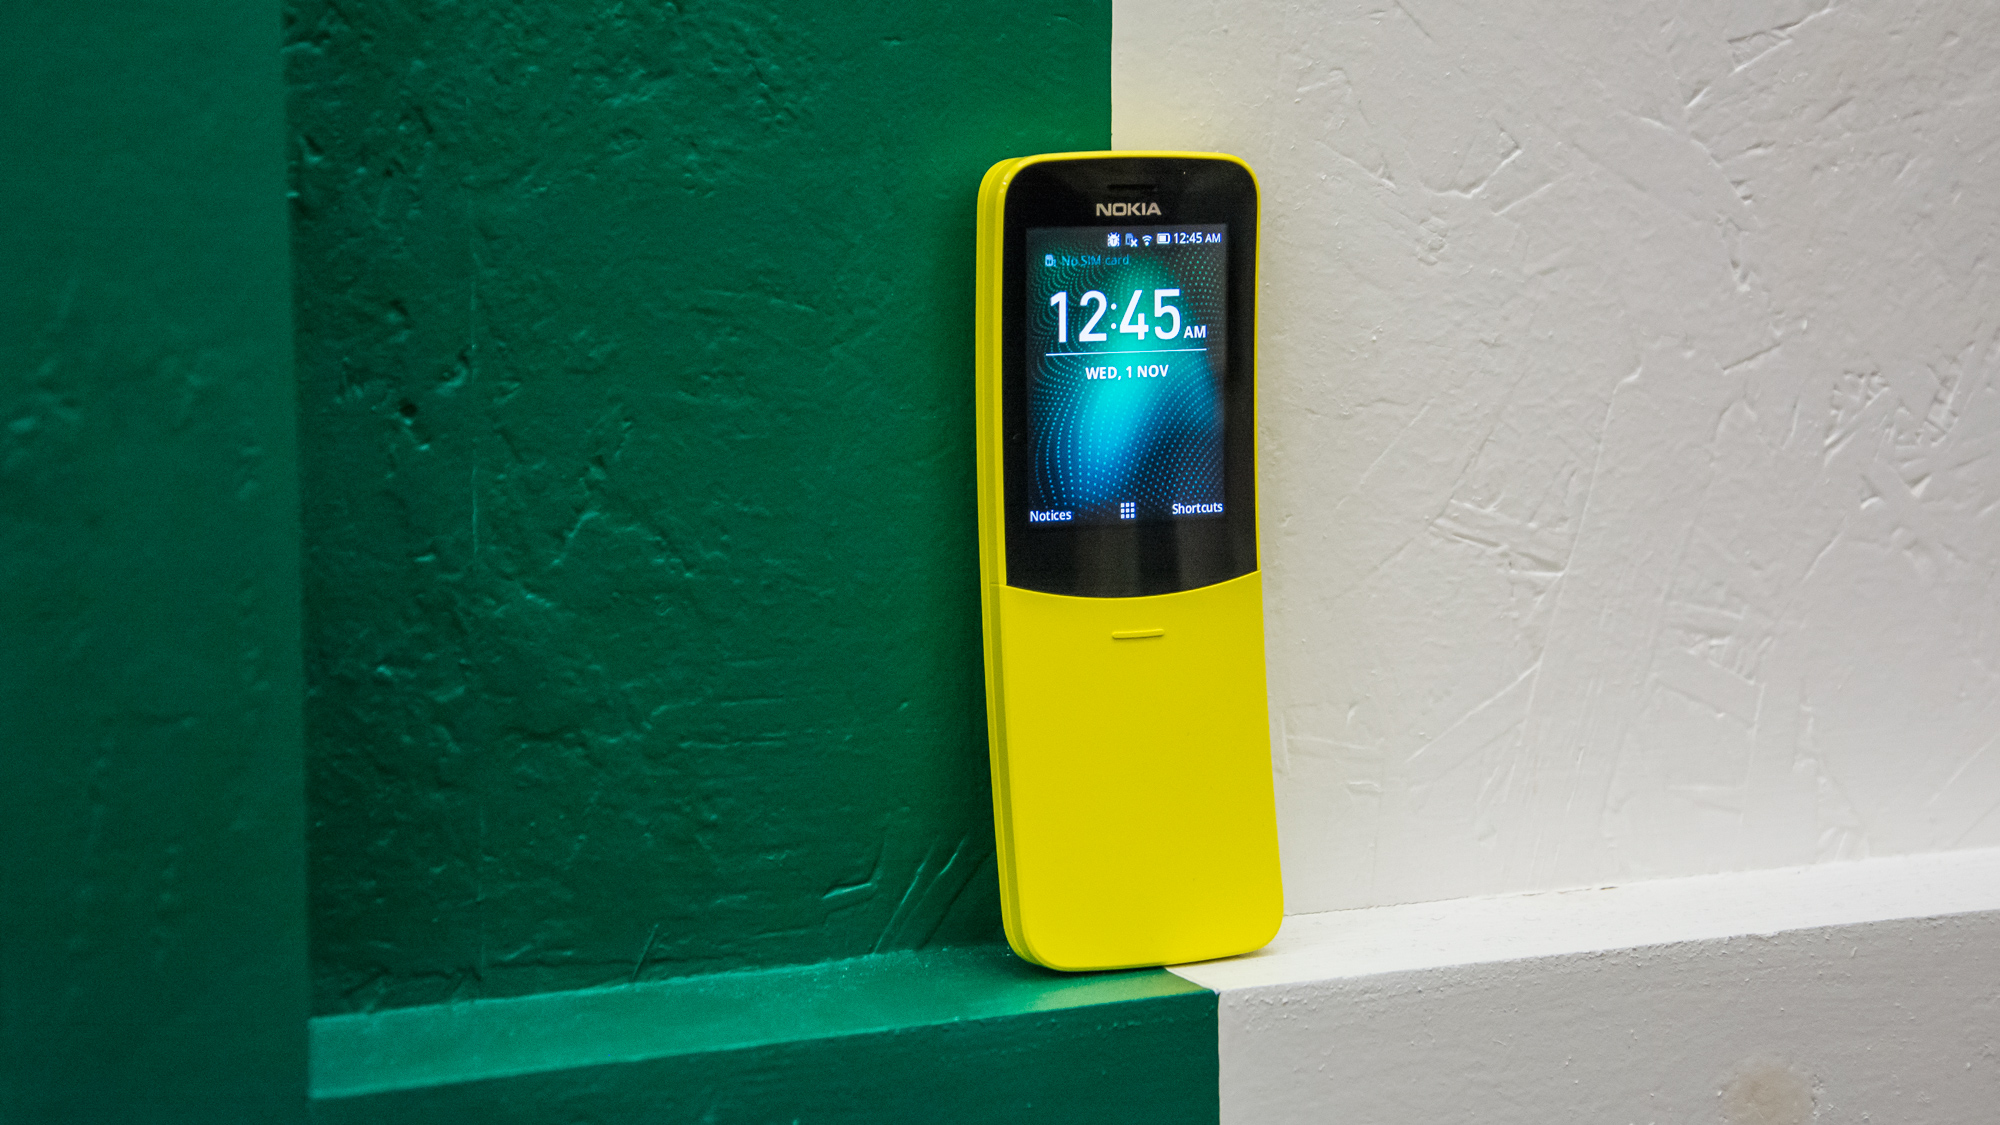 Mời bạn đến với đánh giá Nokia 8110 4G siêu chất lượng, đầy đủ thông tin và trung thực nhất. Hãy xem video để hiểu rõ hơn về thiết kế, tính năng & trải nghiệm sử dụng của chiếc điện thoại này nhé.